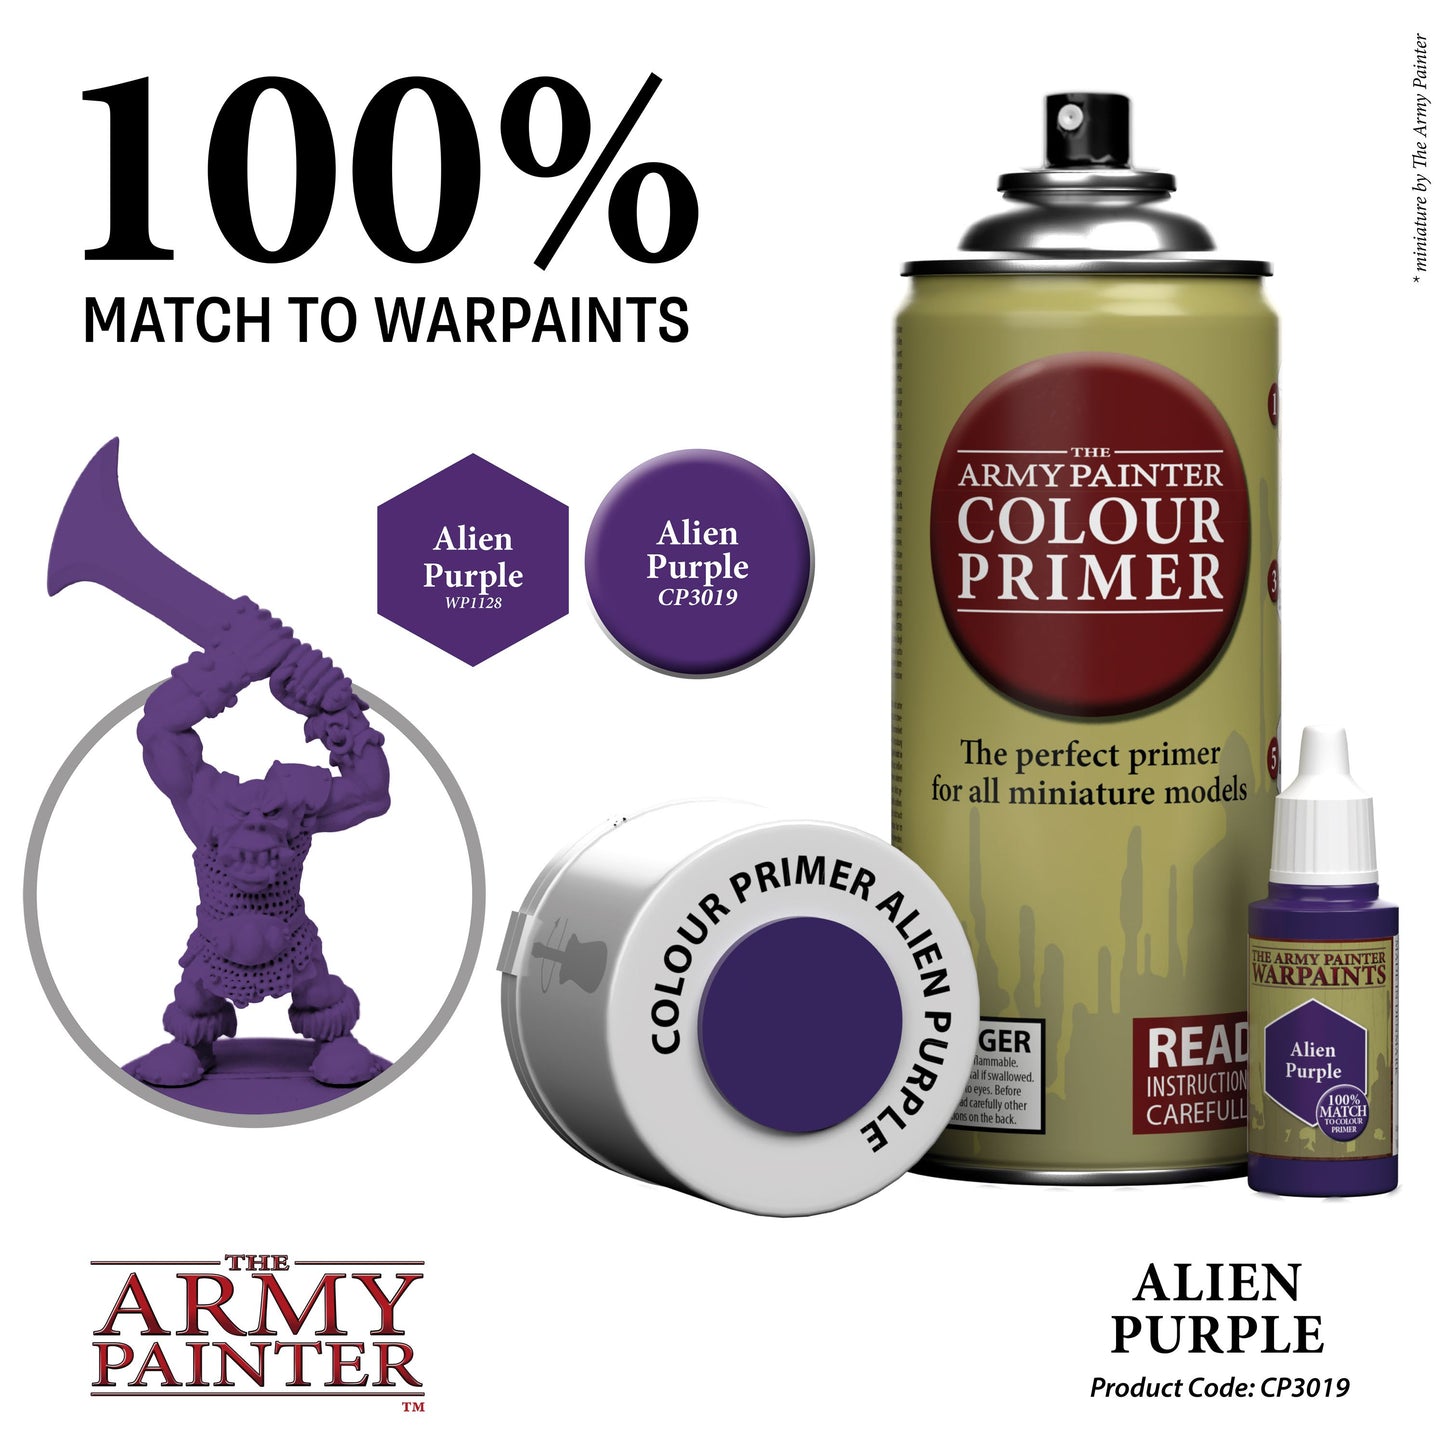 The Army Painter - Colour Primer: Alien Purple (400ml/13.5oz)